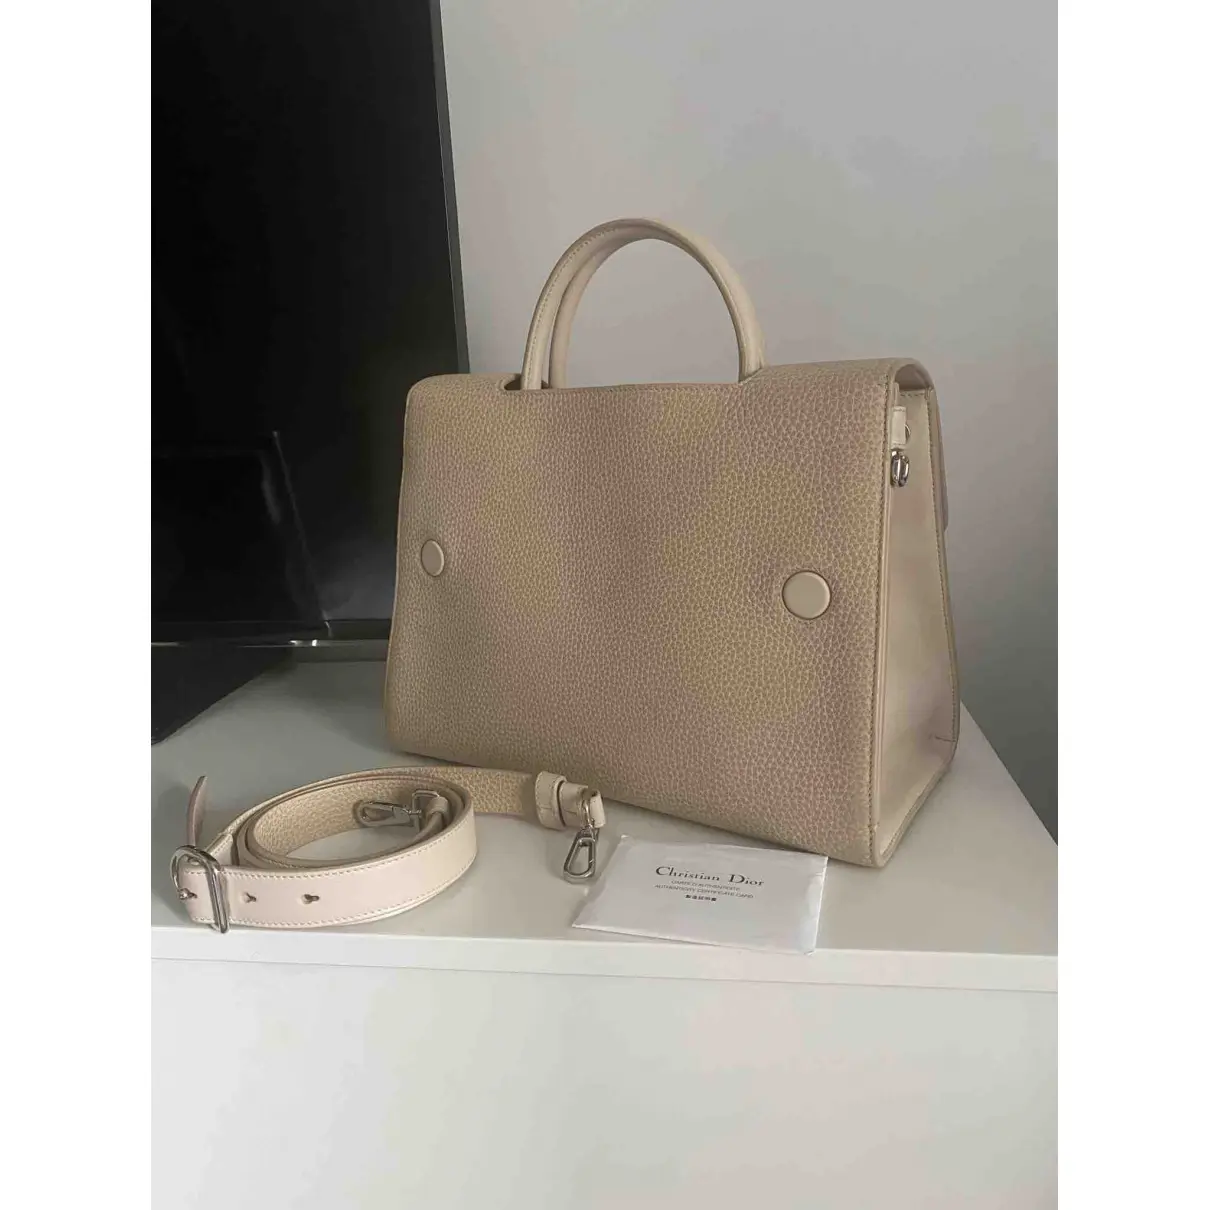 Buy Dior Diorever leather handbag online